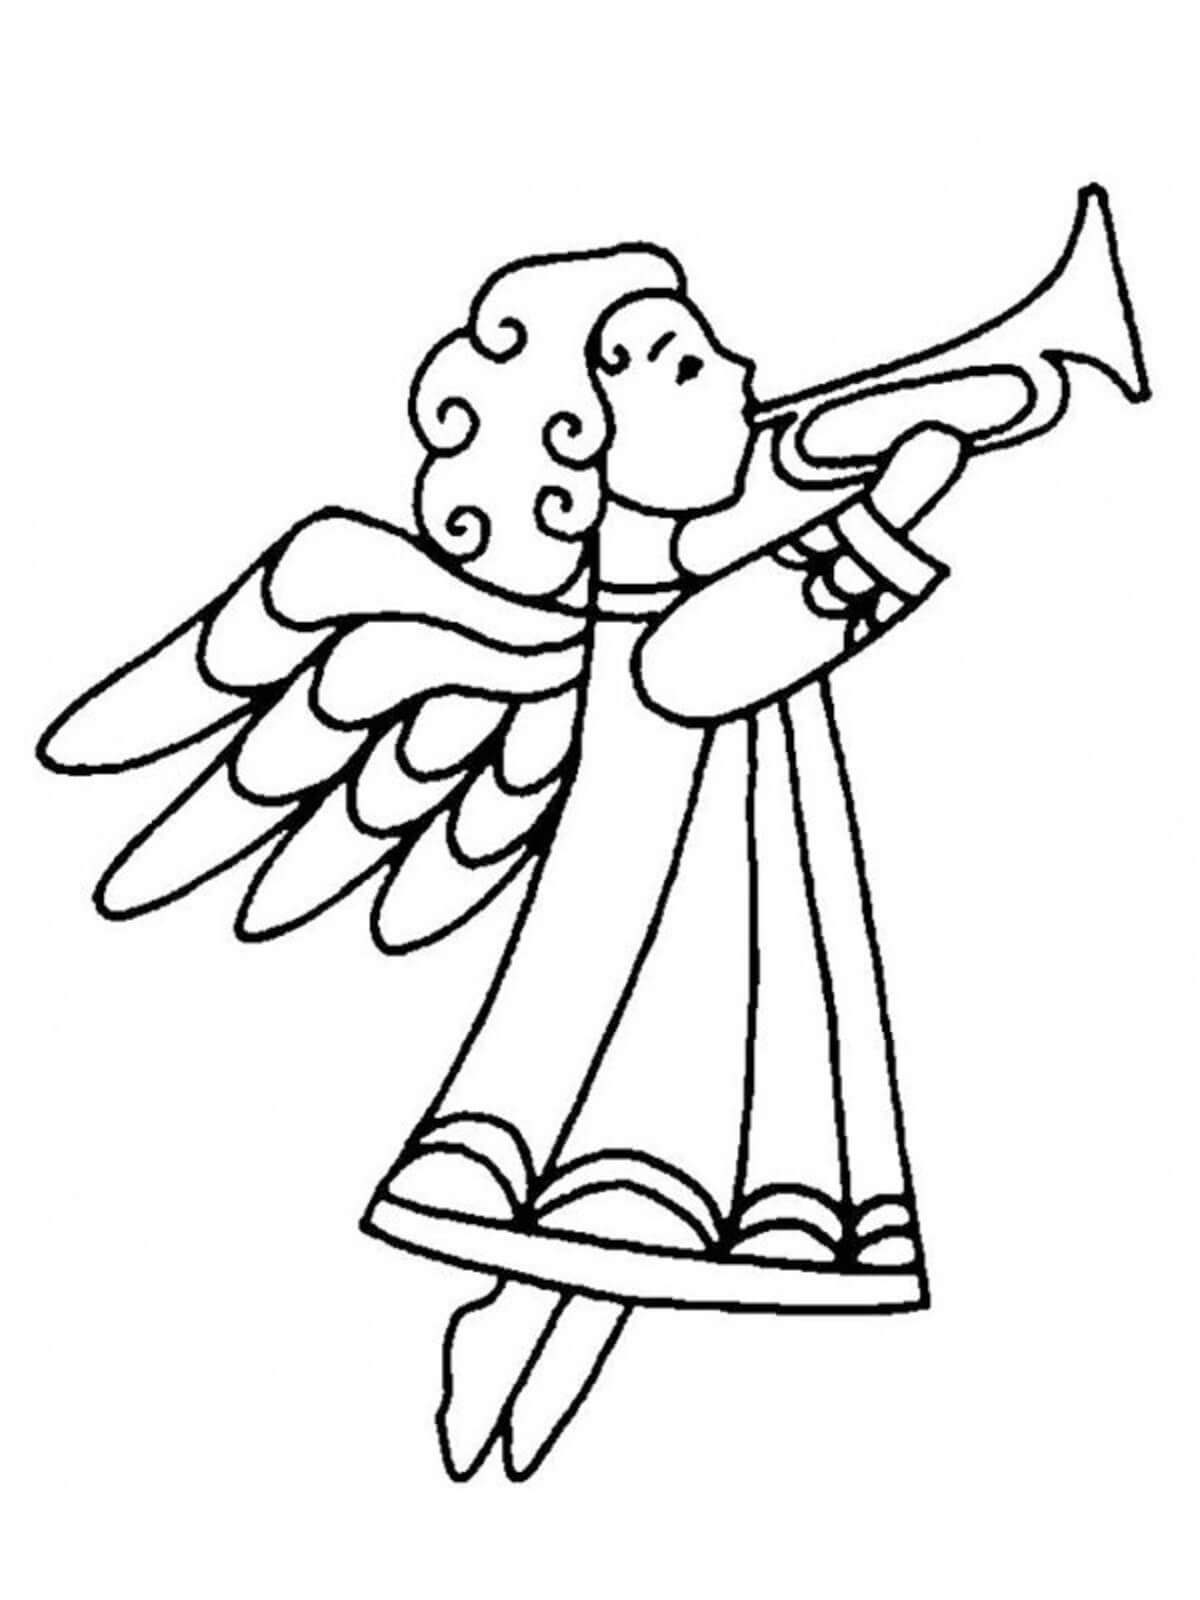 그림의 천사가 트럼펫을 연주하다